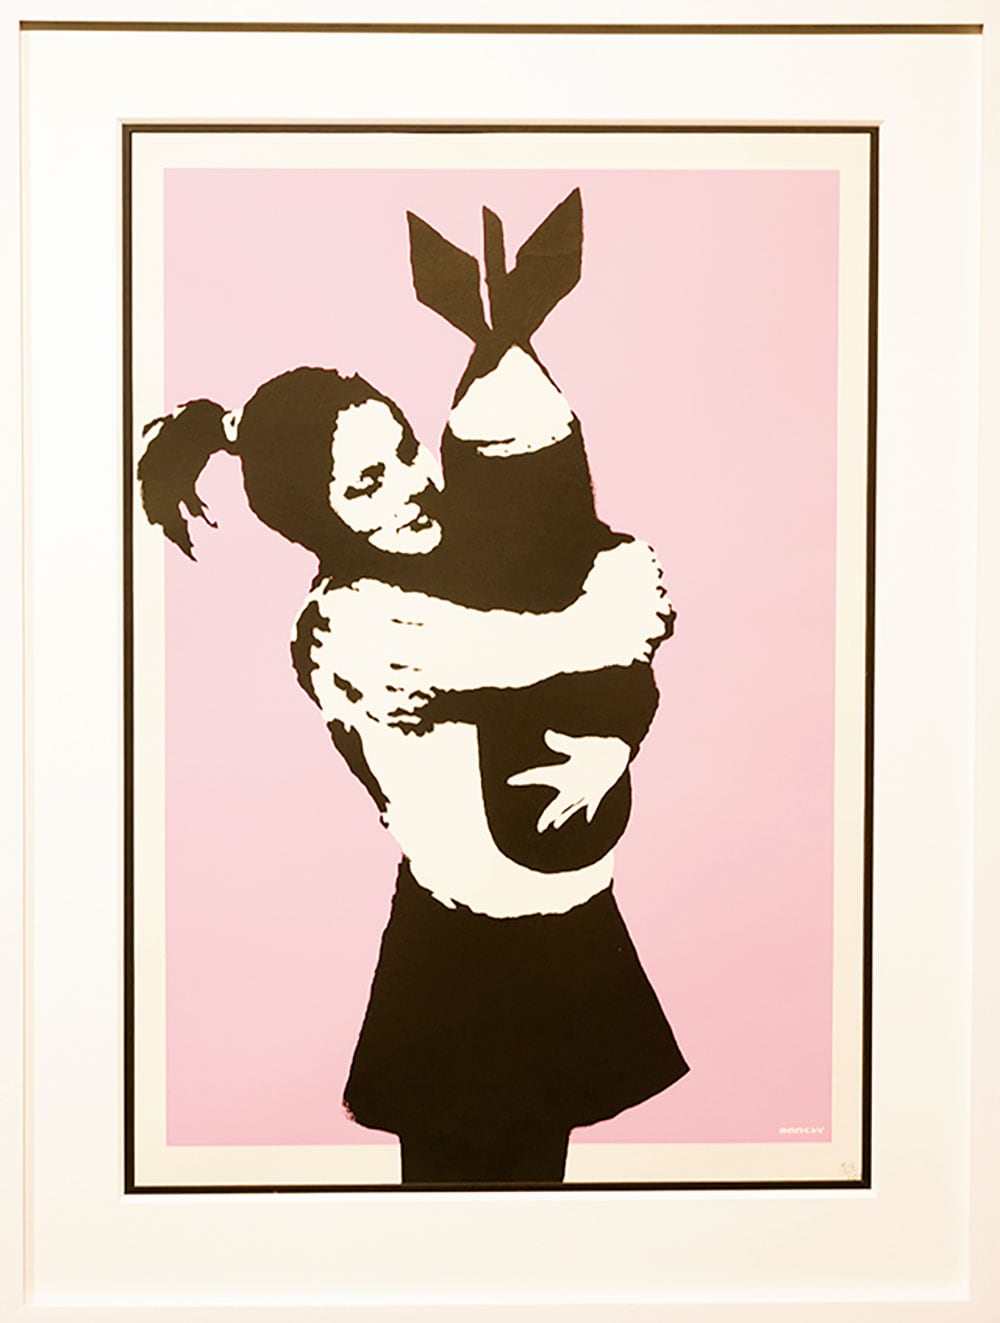 【愛】1998年、バンクシーがステンシルで描いた《ボム・ラブ》。無邪気な笑みを浮かべる少女に抱きしめられたら、その愛情によって爆弾だって無力化できるかもしれない。